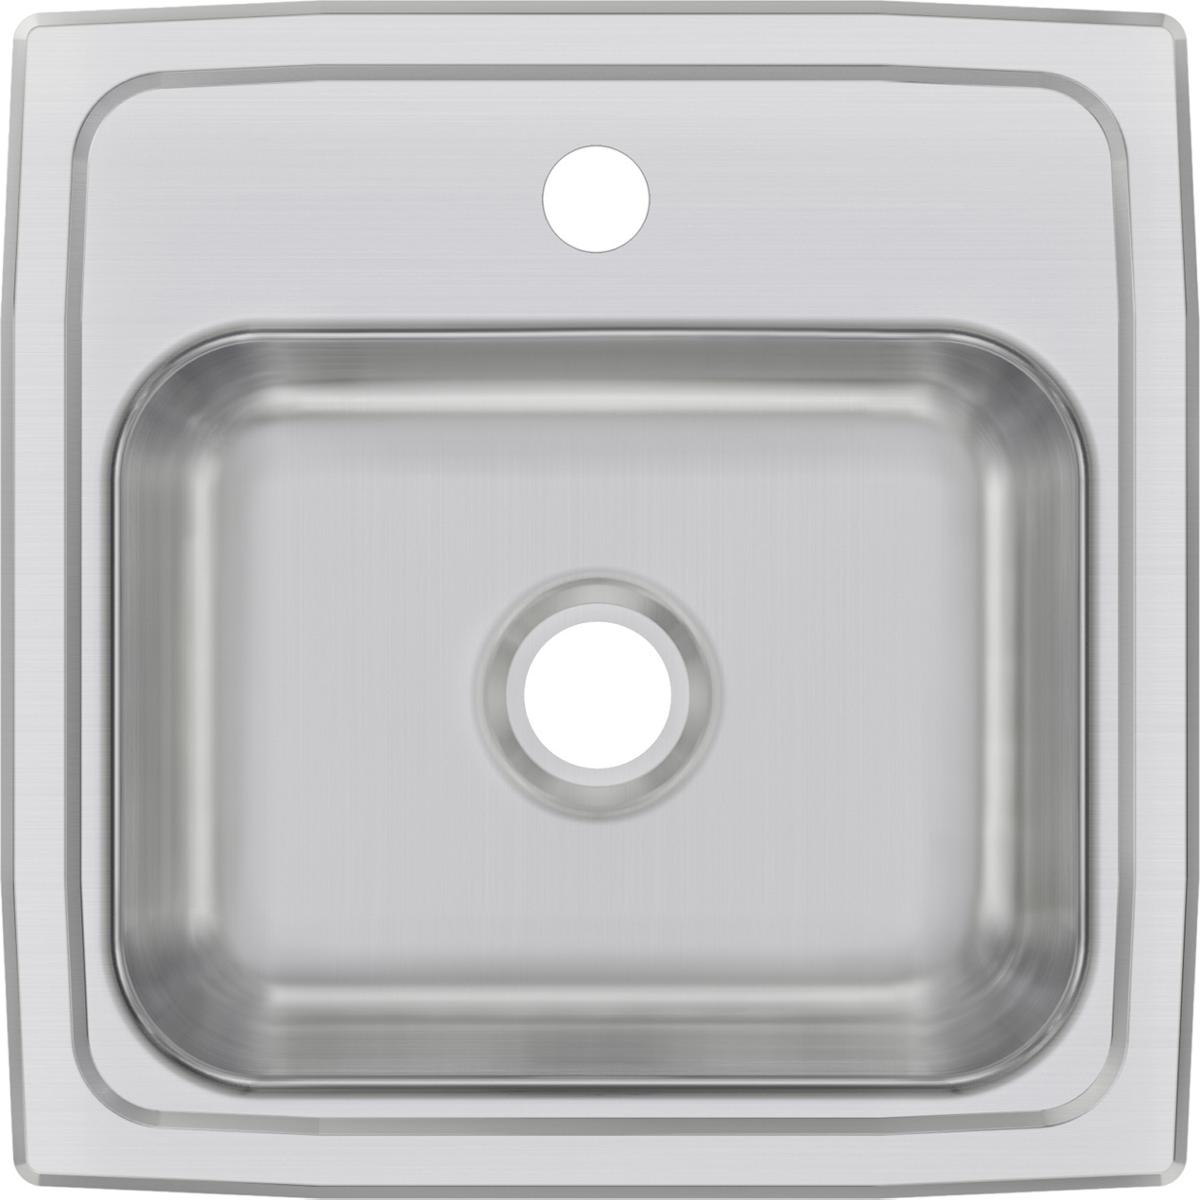 Elkay Celebrity Stainless Steel 15" x 15" x 6-1/8" Single Bowl Drop-in Bar Sink